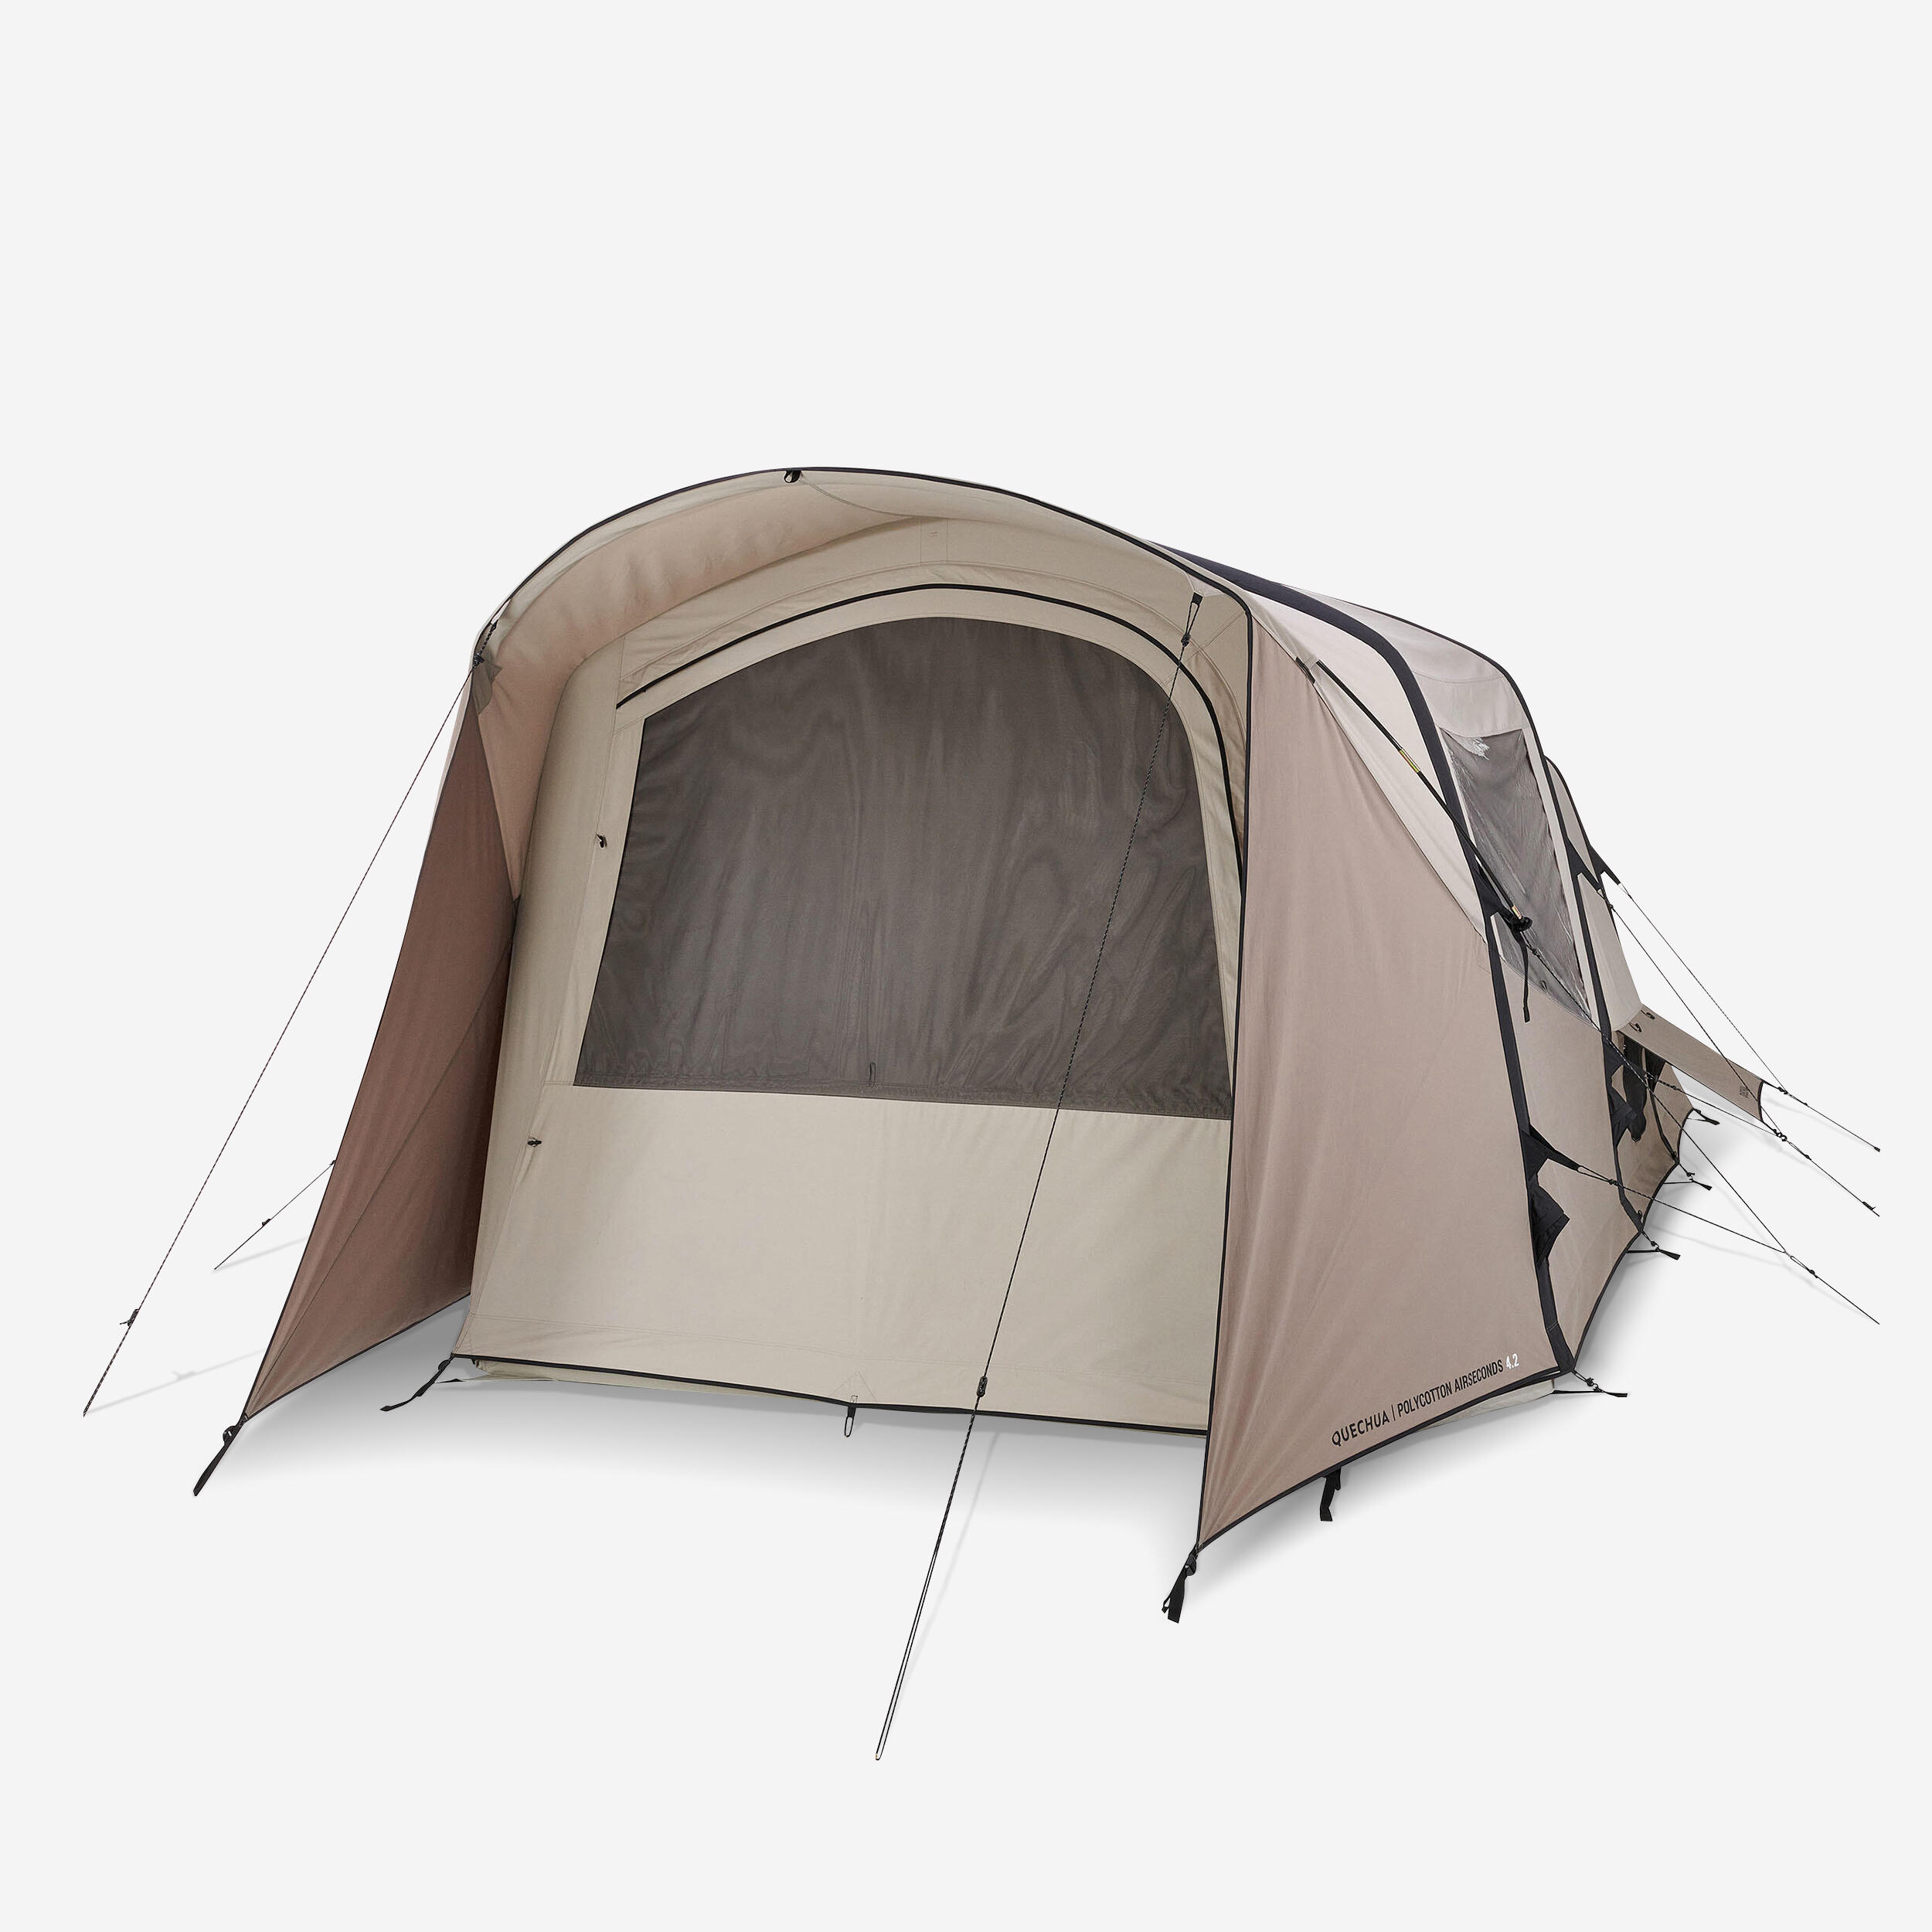 QUECHUA Tente Gonflable De Camping - Airseconds 4.2 Polycoton 4 Personnes 2 Chambres